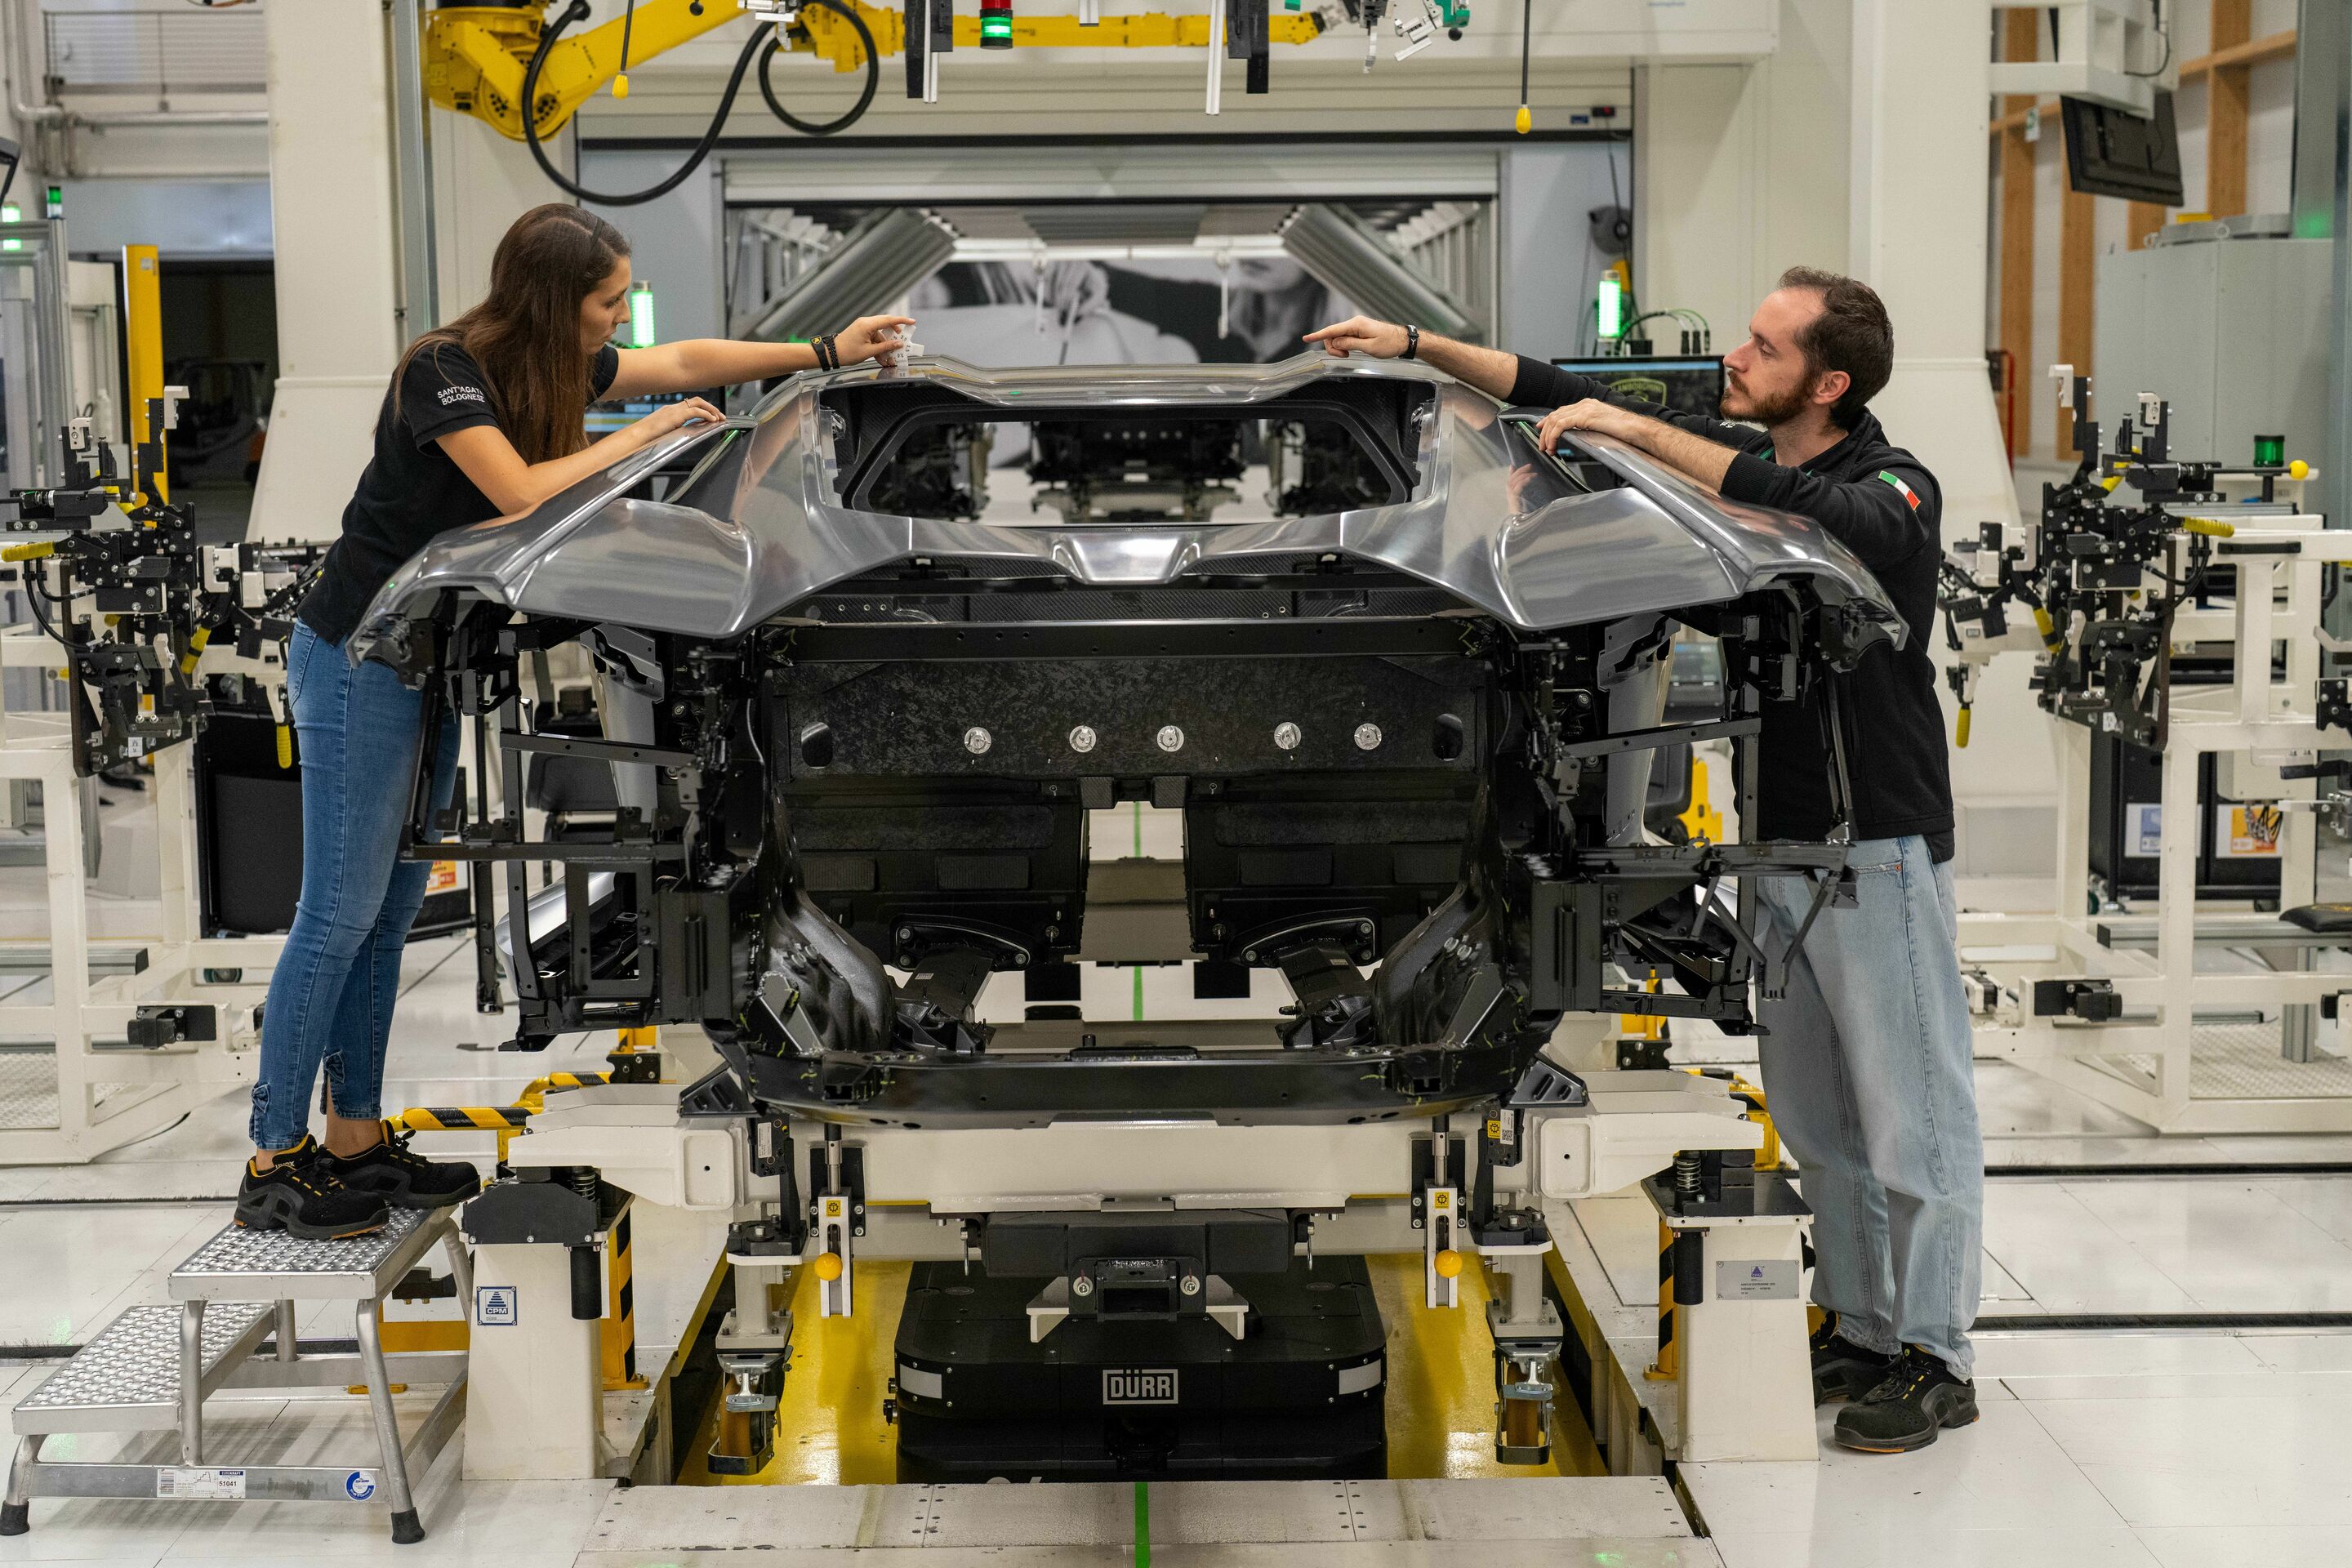 Automobili Lamborghini beschließt das Jahr 2023 mit beispiellosen Rekorden